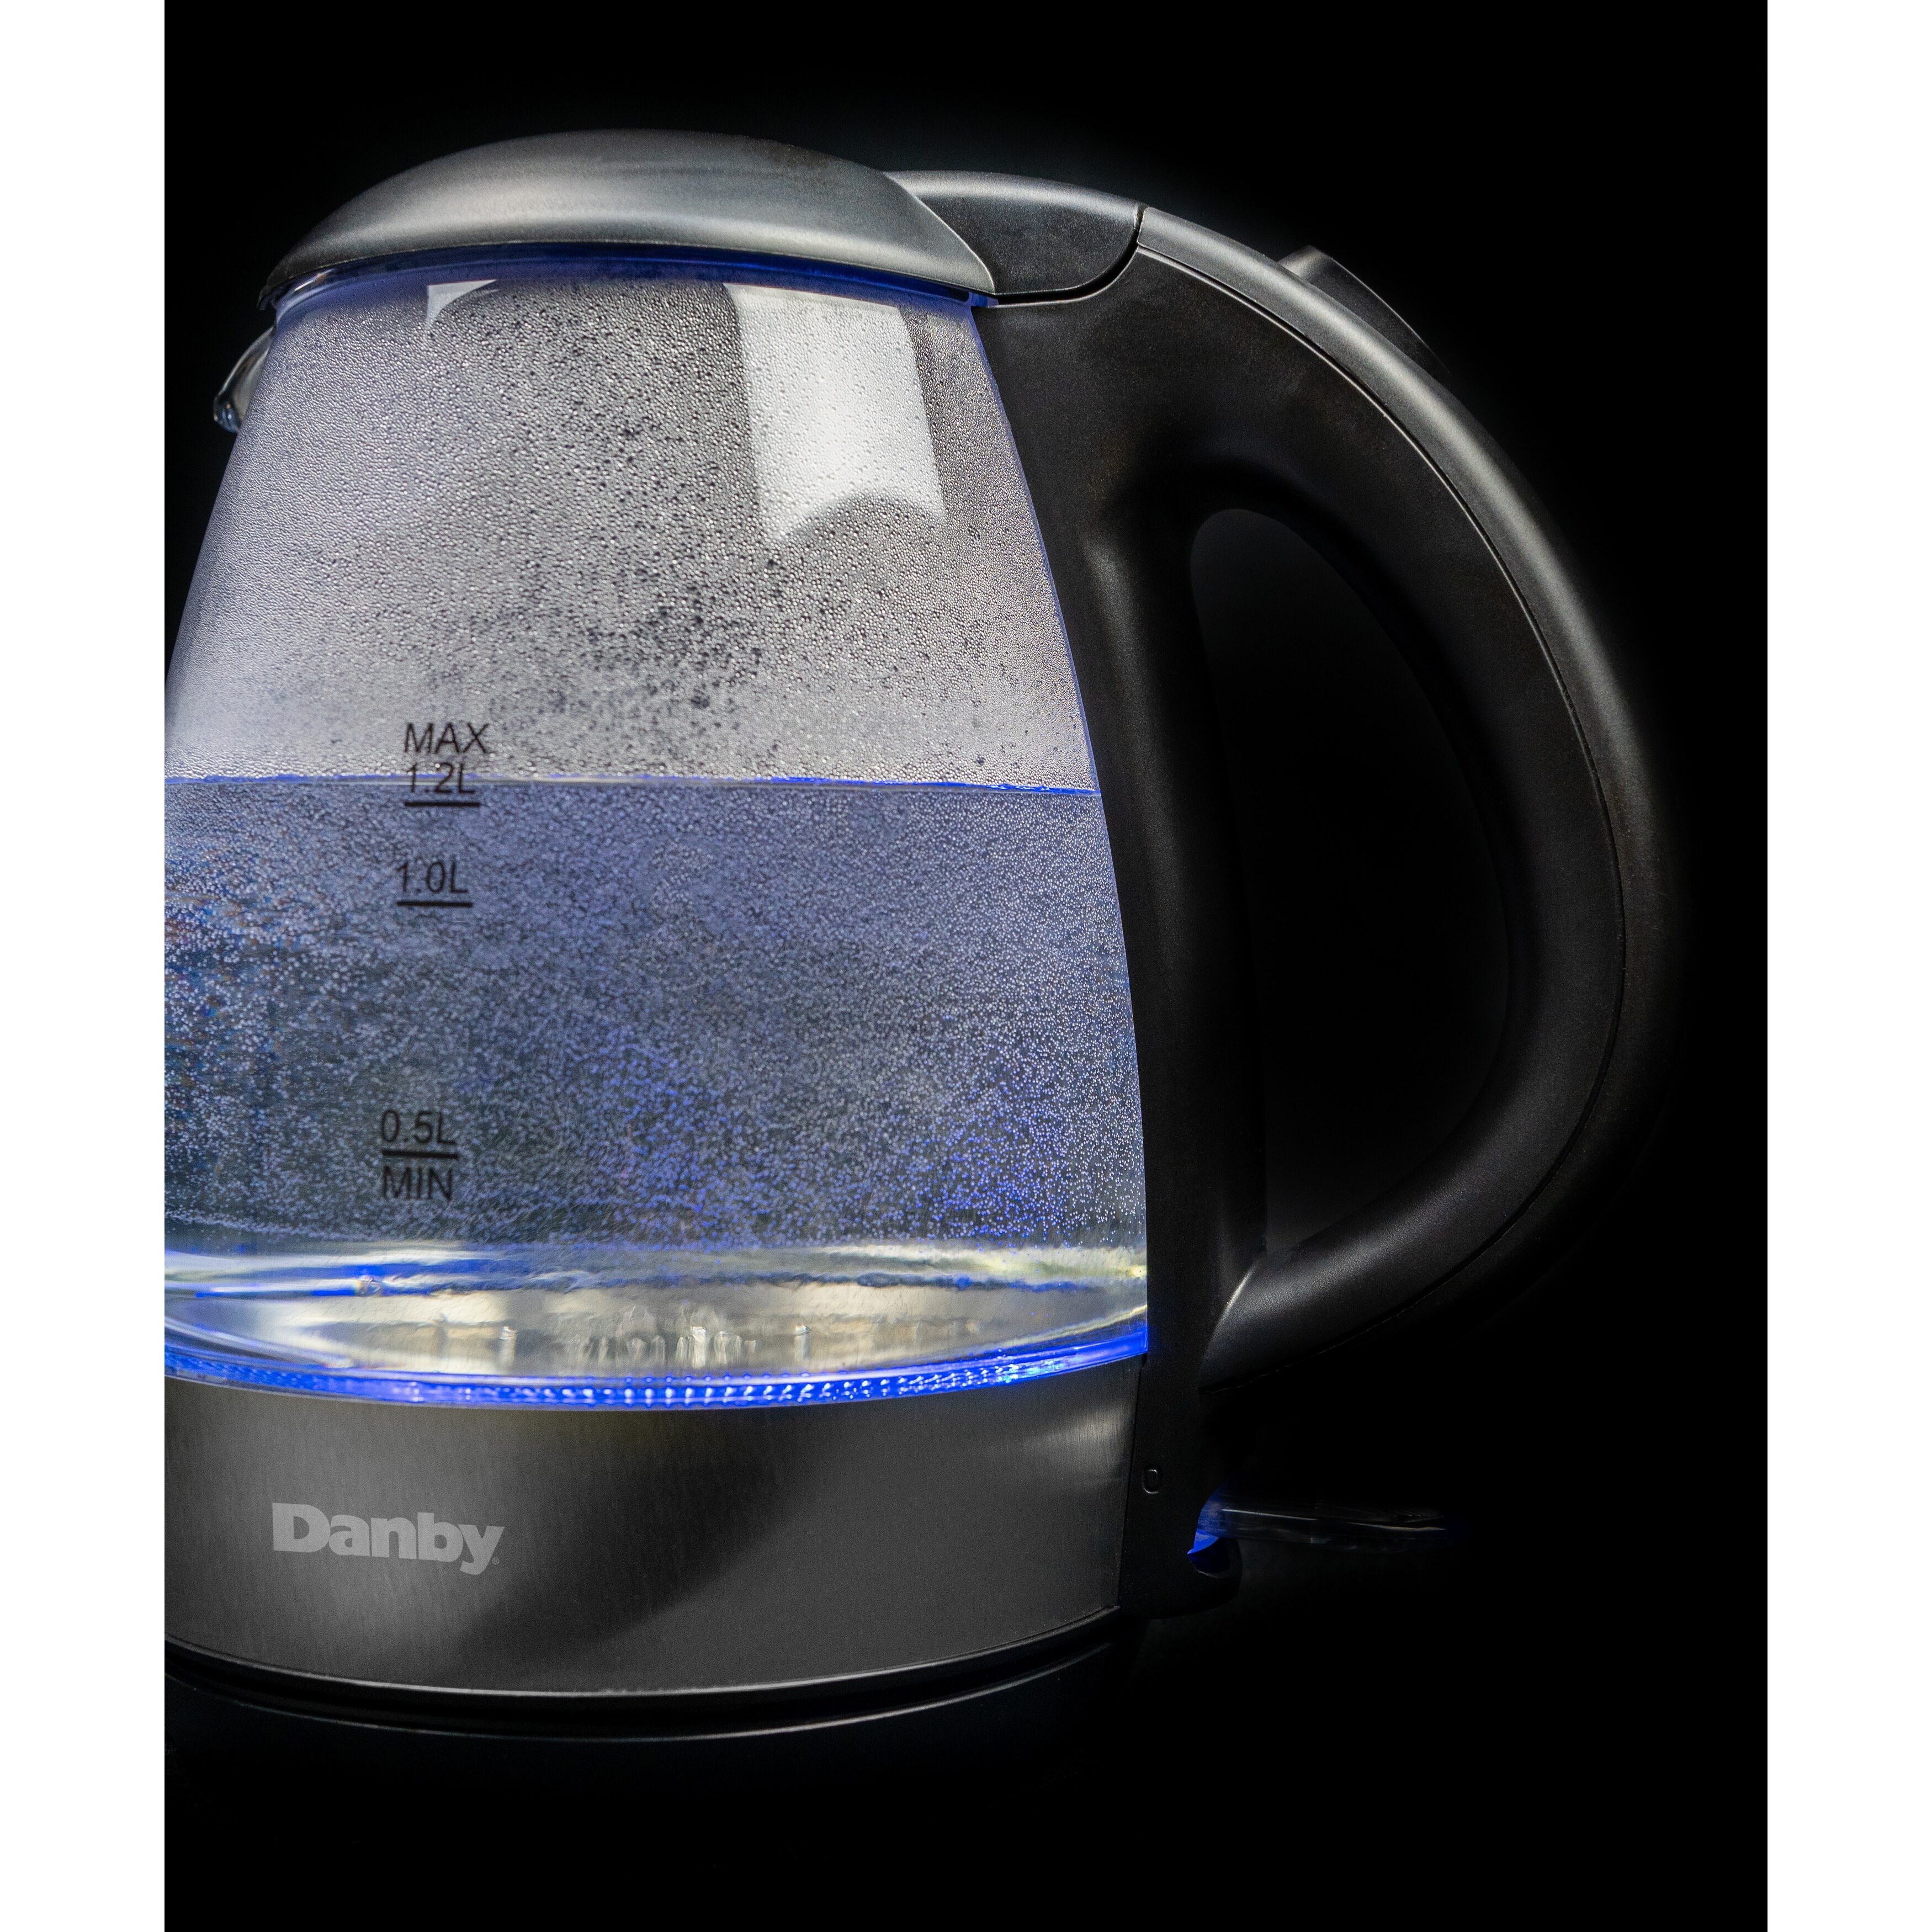 Danby 1.2L Glass Kettle in Black - DBKT12013BD11